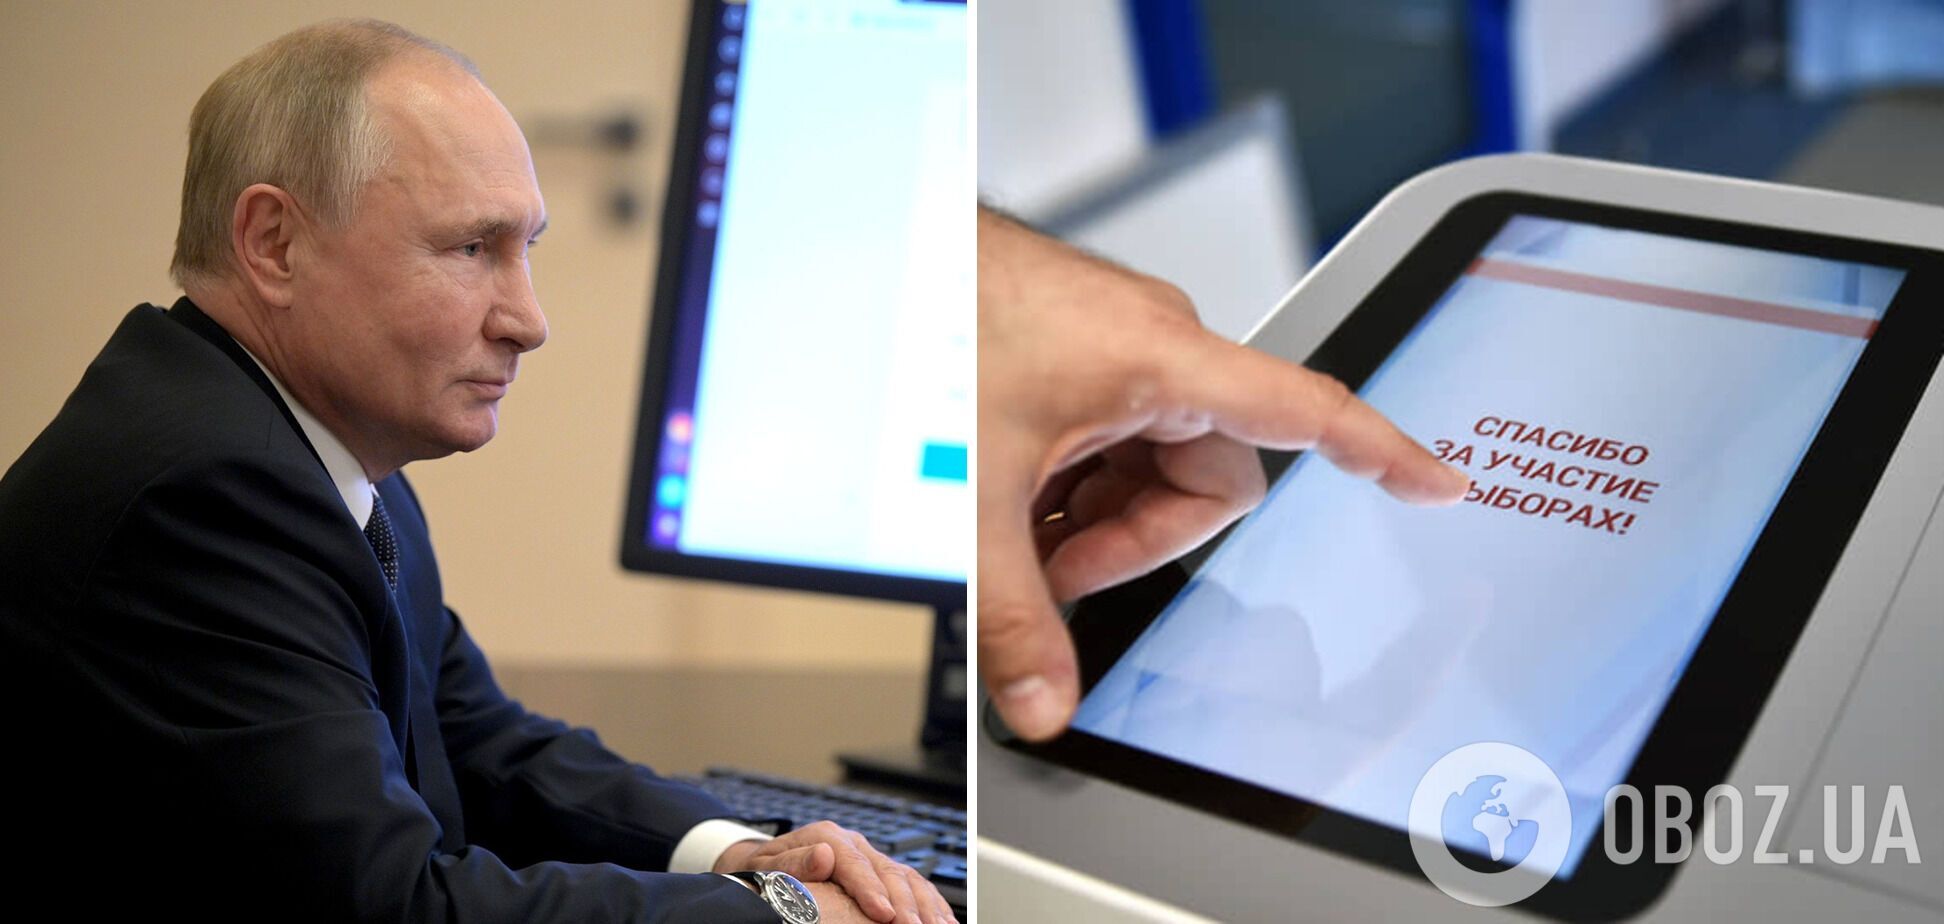 Президент РФ Владимир Путин участвует в интернет-голосовании